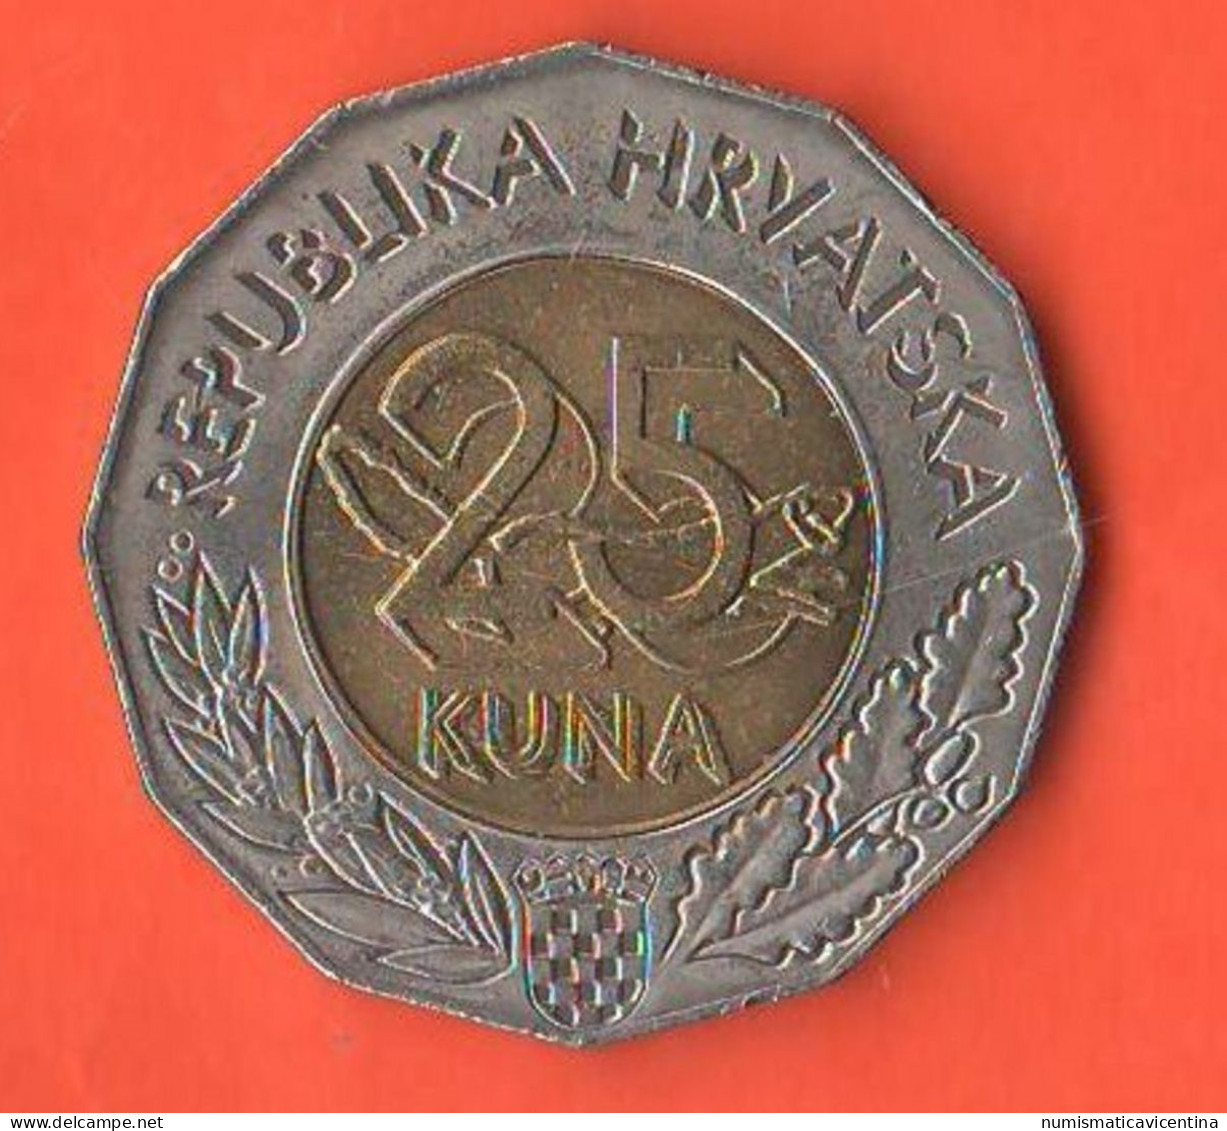 Croazia 25 Kuna 1997 Croatia ONU Republic Hrvatska Croatie Bimetallic Coin - Kroatien